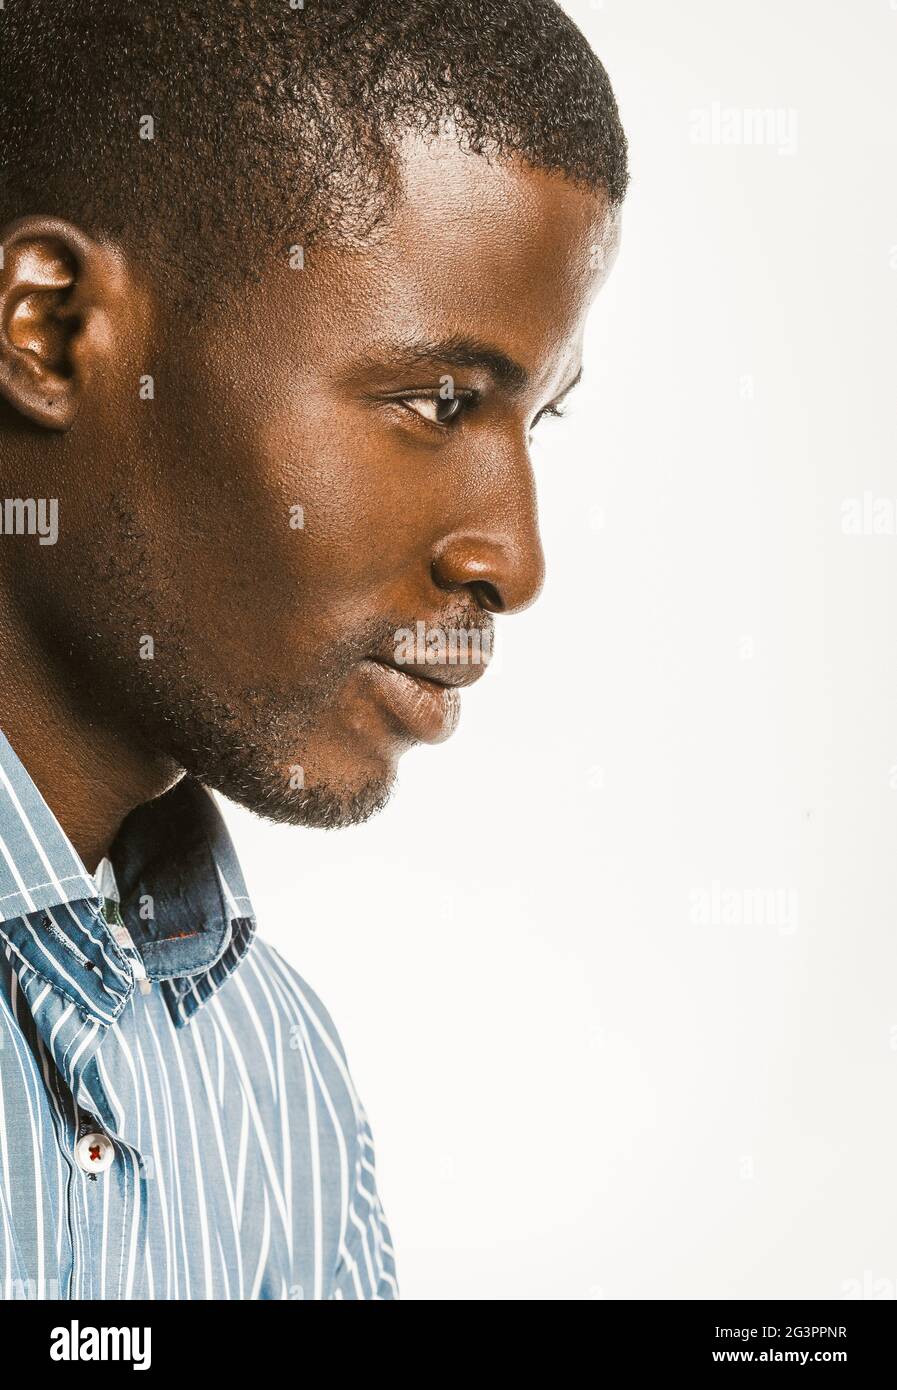 Vista de perfil del hombre afroamericano en una camisa de rayas azules. Retrato de primer plano de un atractivo hombre de piel oscura aislado en un Foto de stock